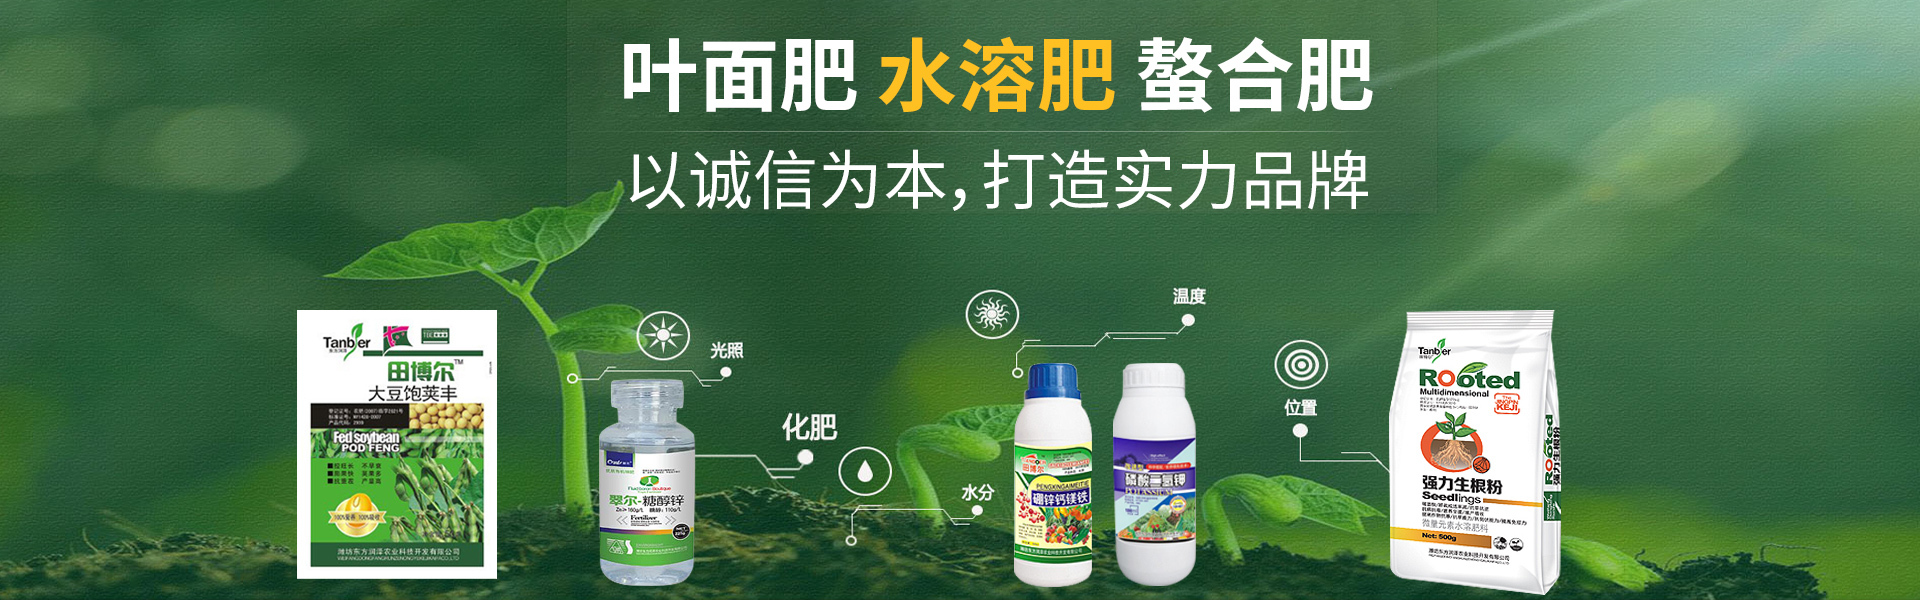 潍坊东方润泽农业科技开发有限公司